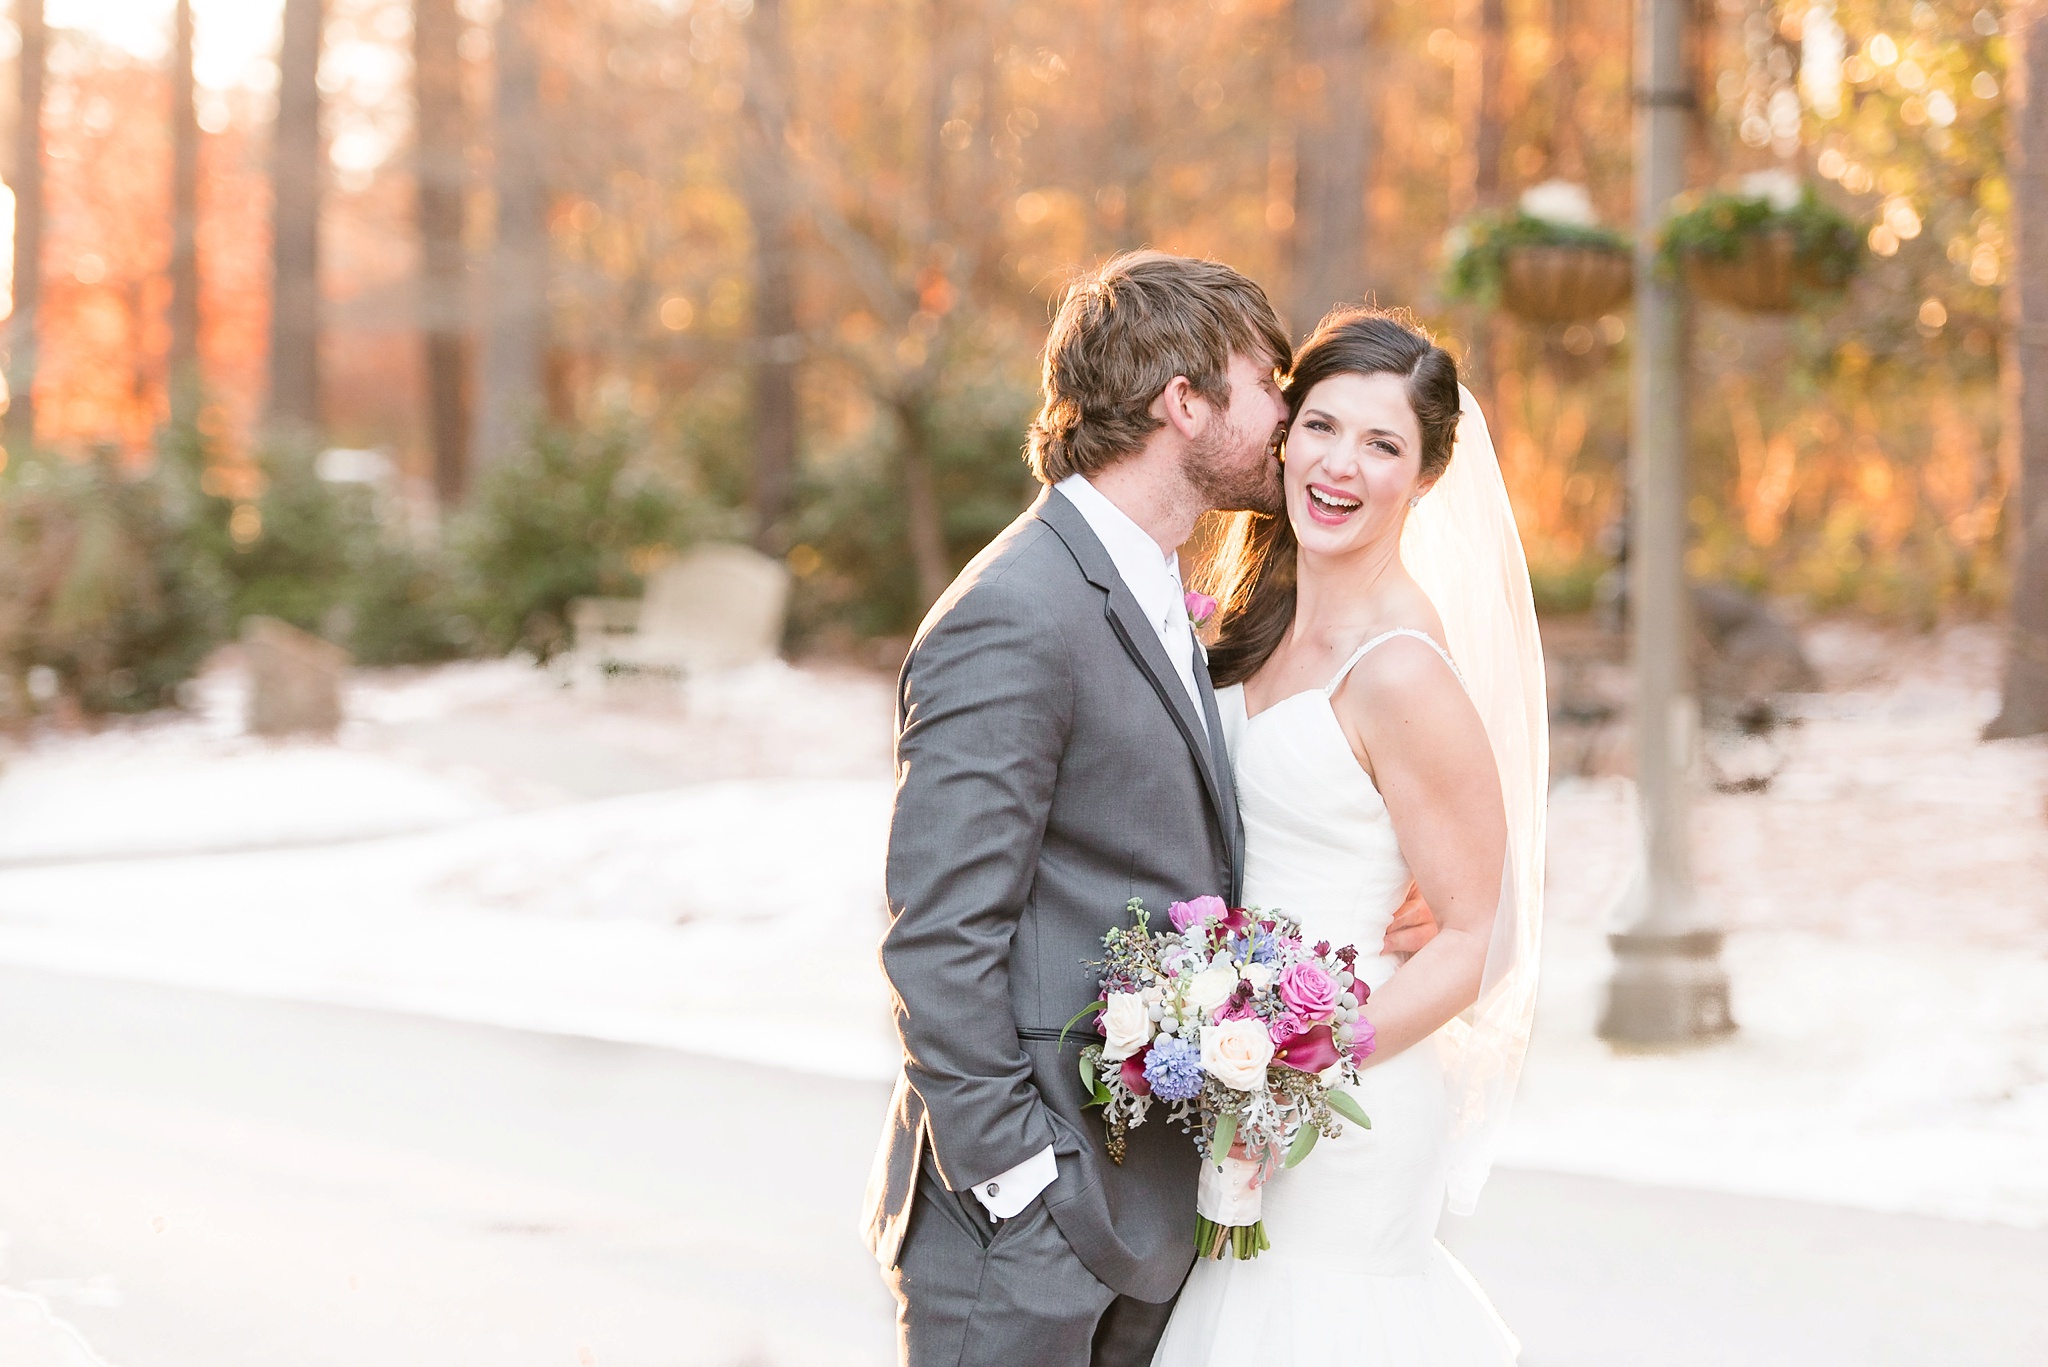 Snowy Winter Aldridge Gardens Wedding | Birmingham Alabama Wedding Photographers_0037.jpg